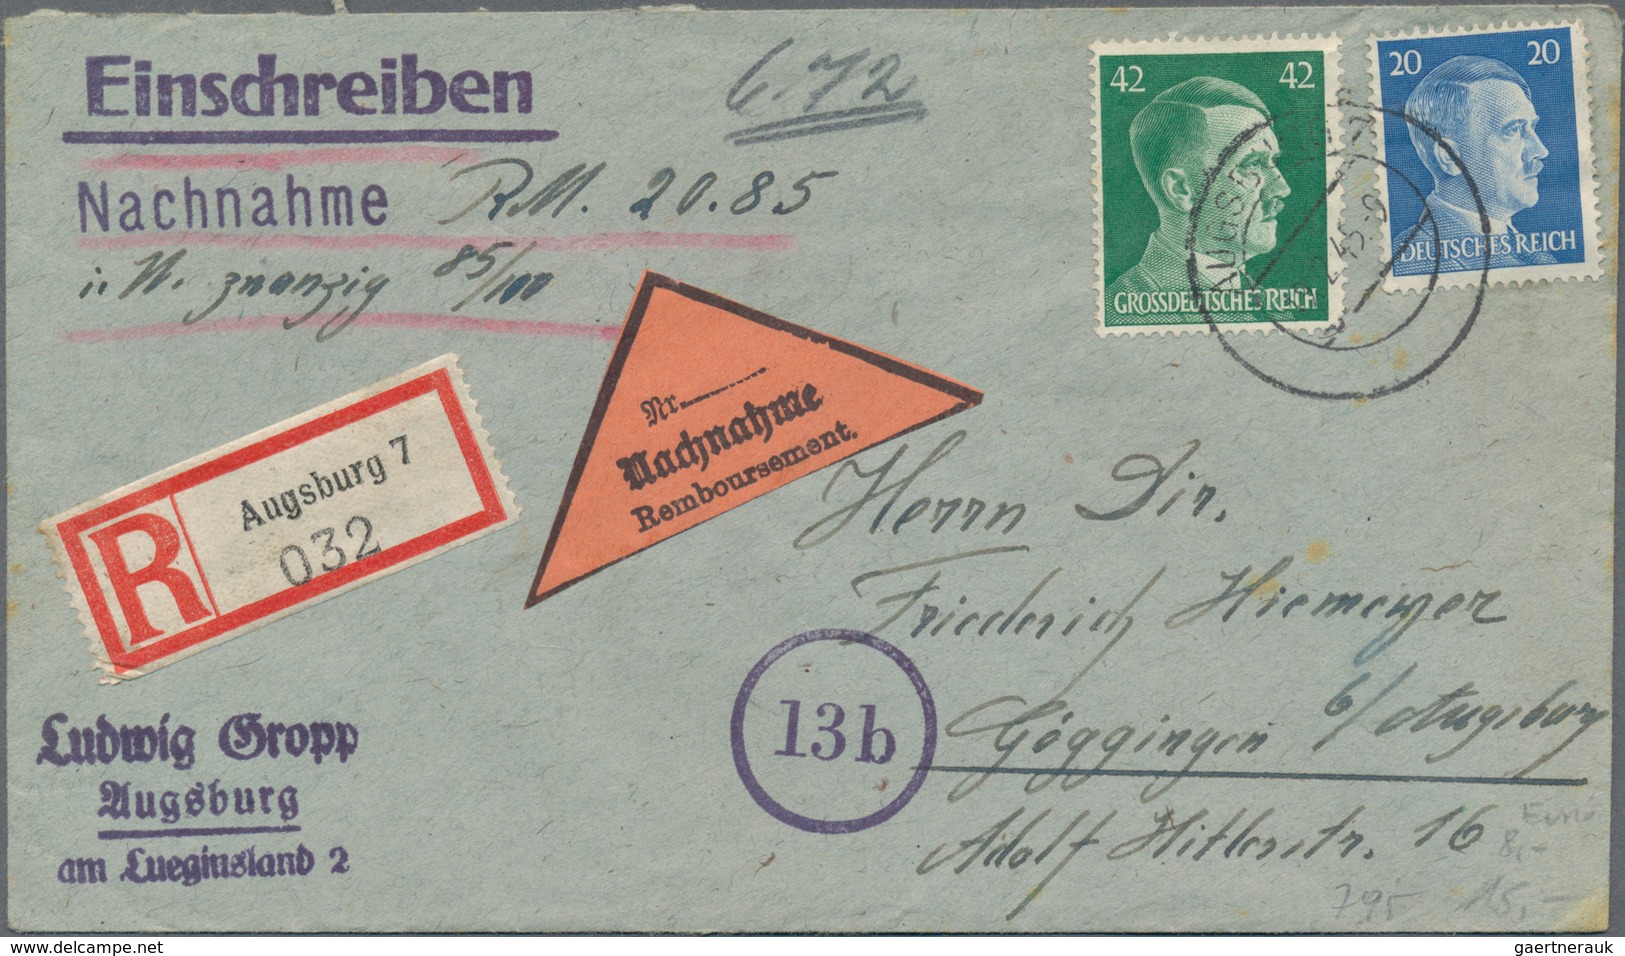 Deutschland: 1900/1945, umfangreiche Zusammenstellung von ca. 800 Briefen, Karten aus allem Bereiche